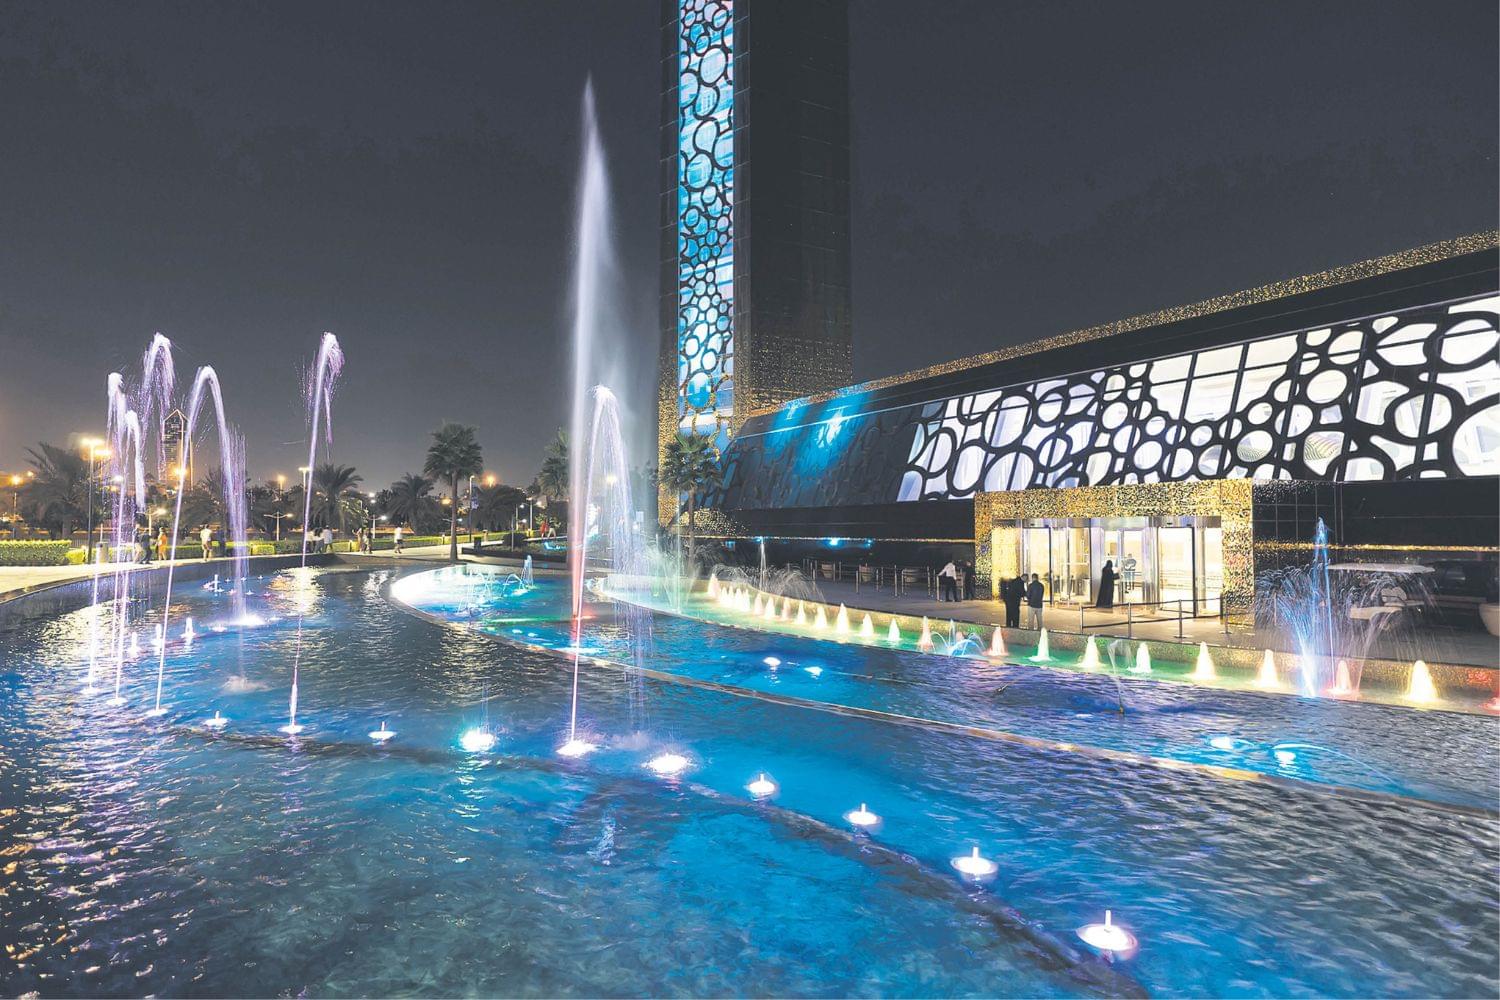 Dubai Frame Garden & Fountain Show